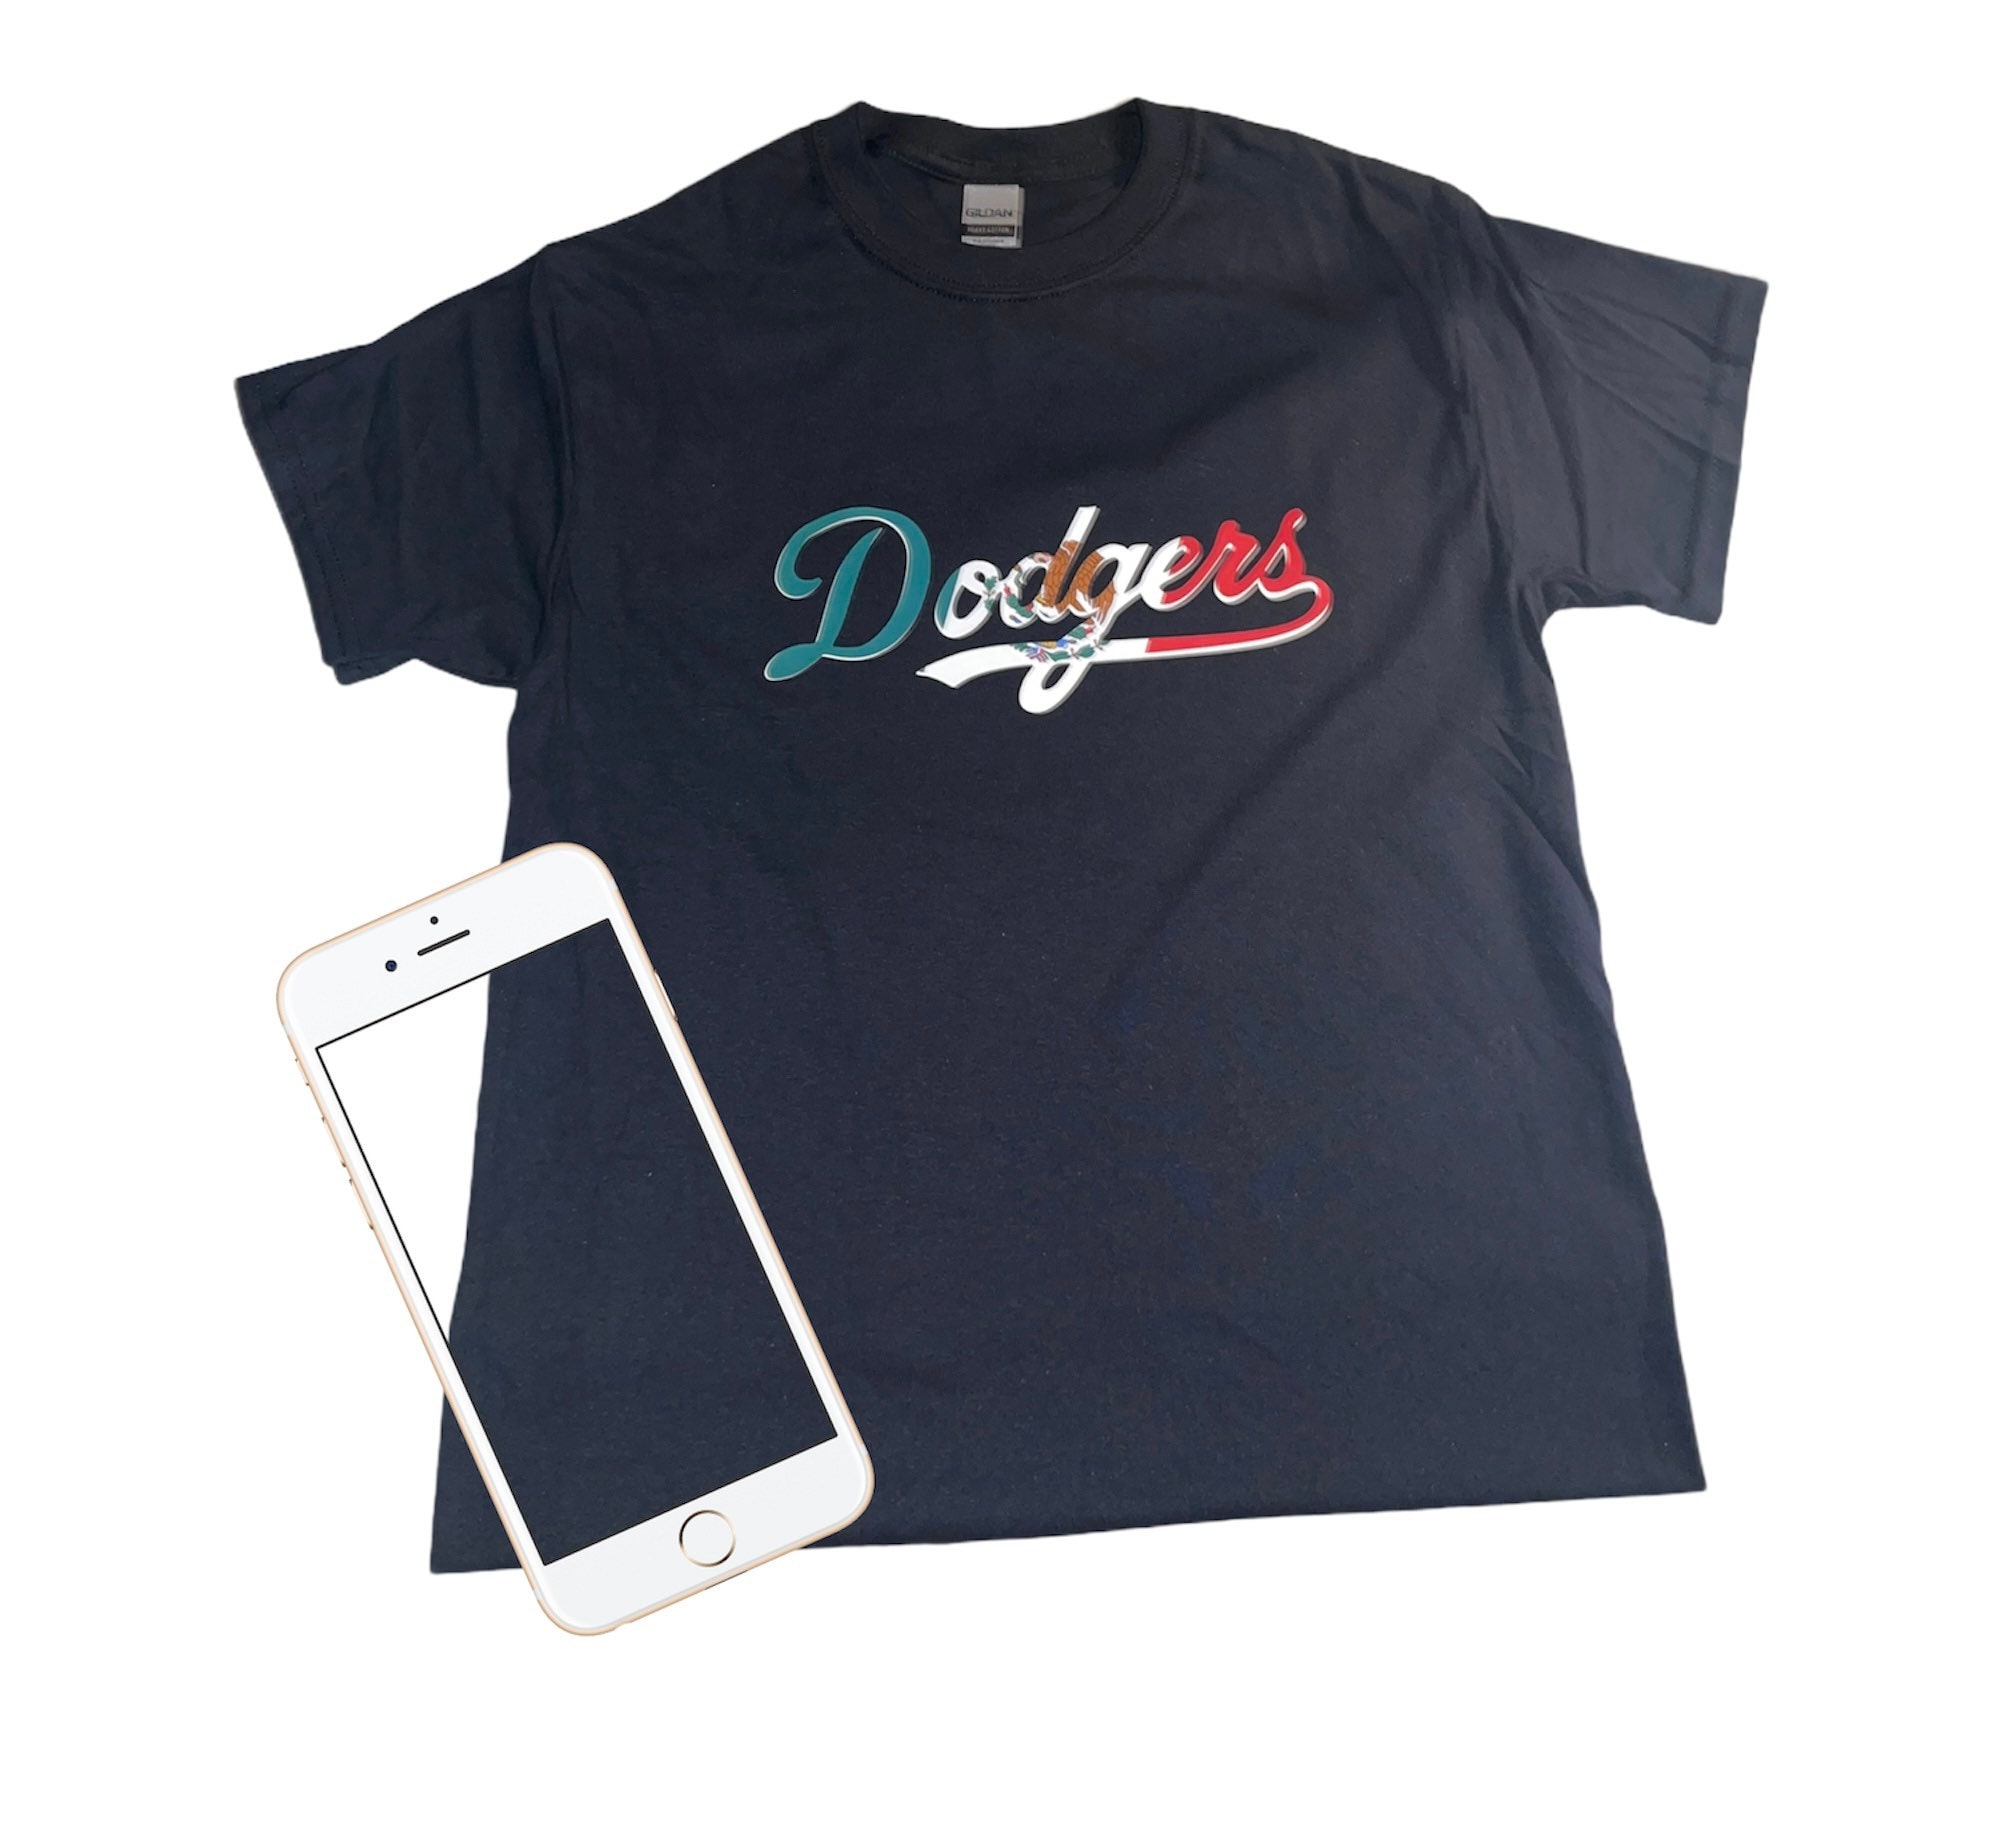 Mexican Dodger Shirt 